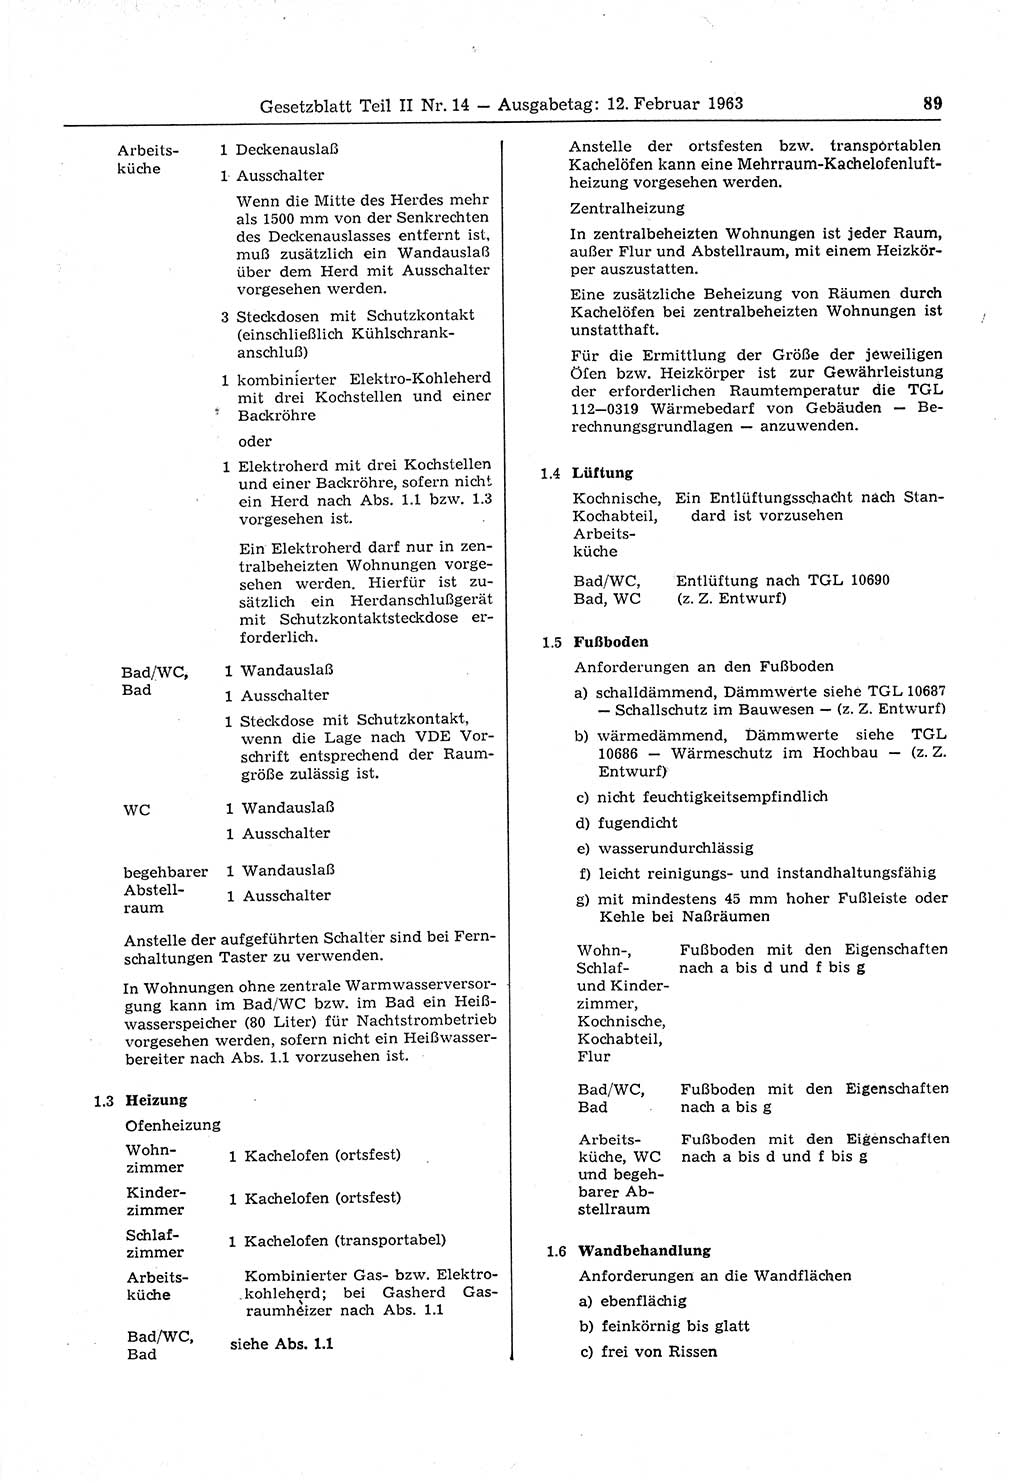 Gesetzblatt (GBl.) der Deutschen Demokratischen Republik (DDR) Teil ⅠⅠ 1963, Seite 89 (GBl. DDR ⅠⅠ 1963, S. 89)